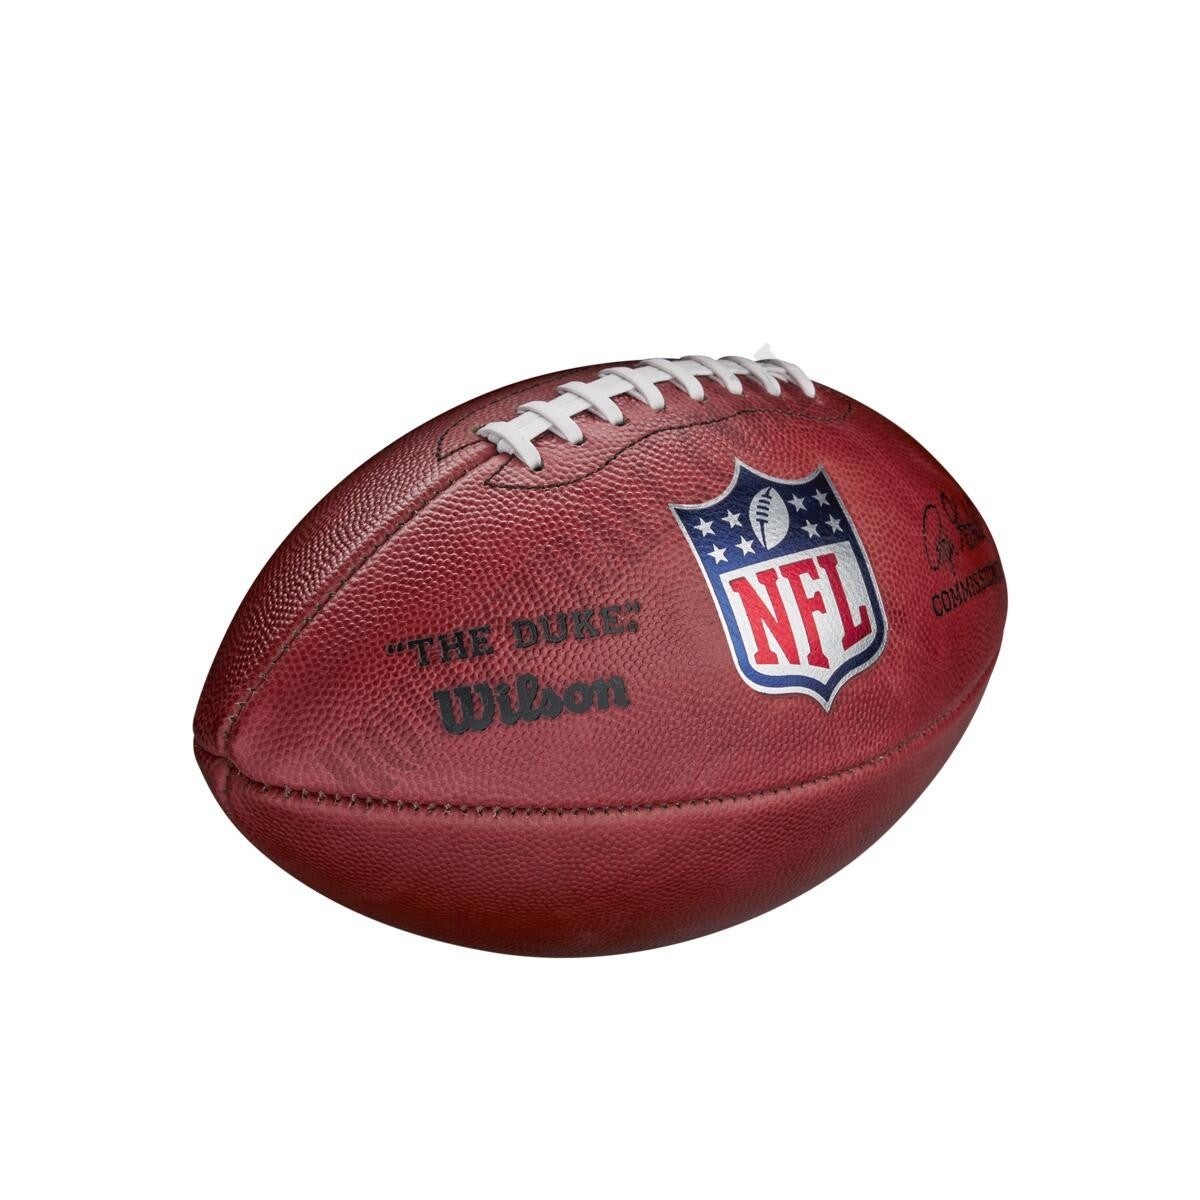 The Duke NFL Football ● Wilson Promotions - -3